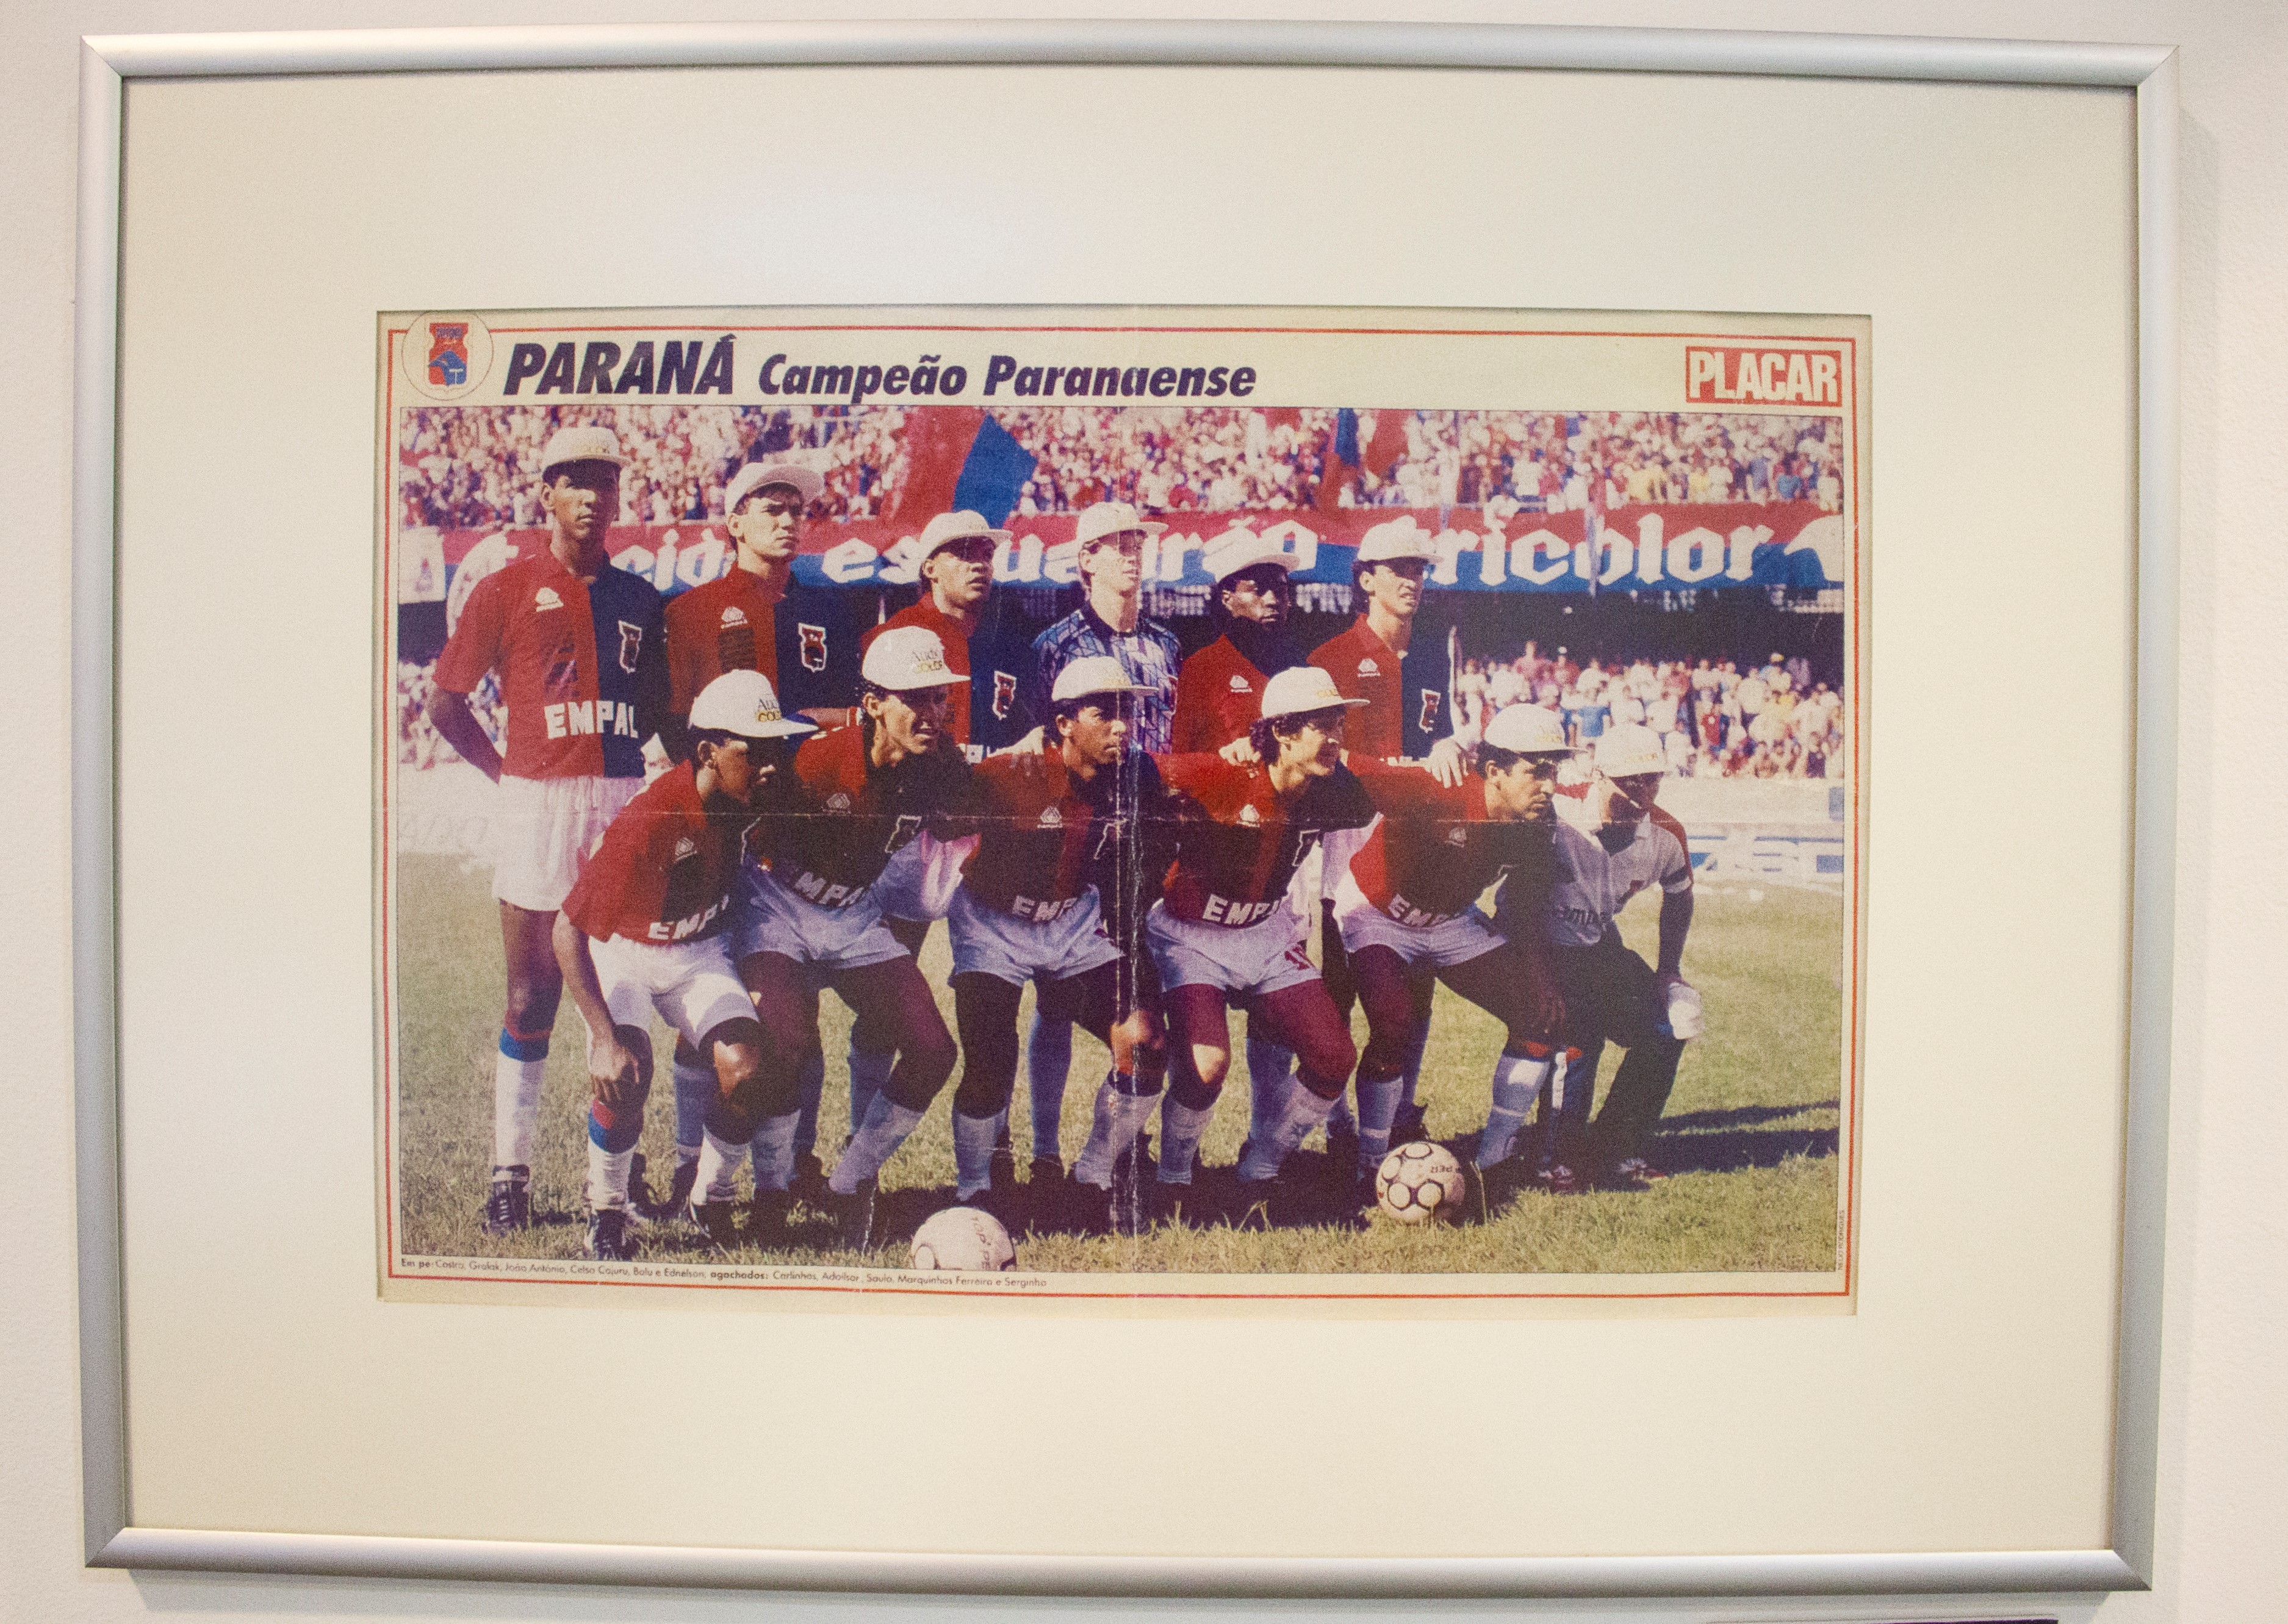 Castro - Revista Placar, campeão Paranaense em 1991.